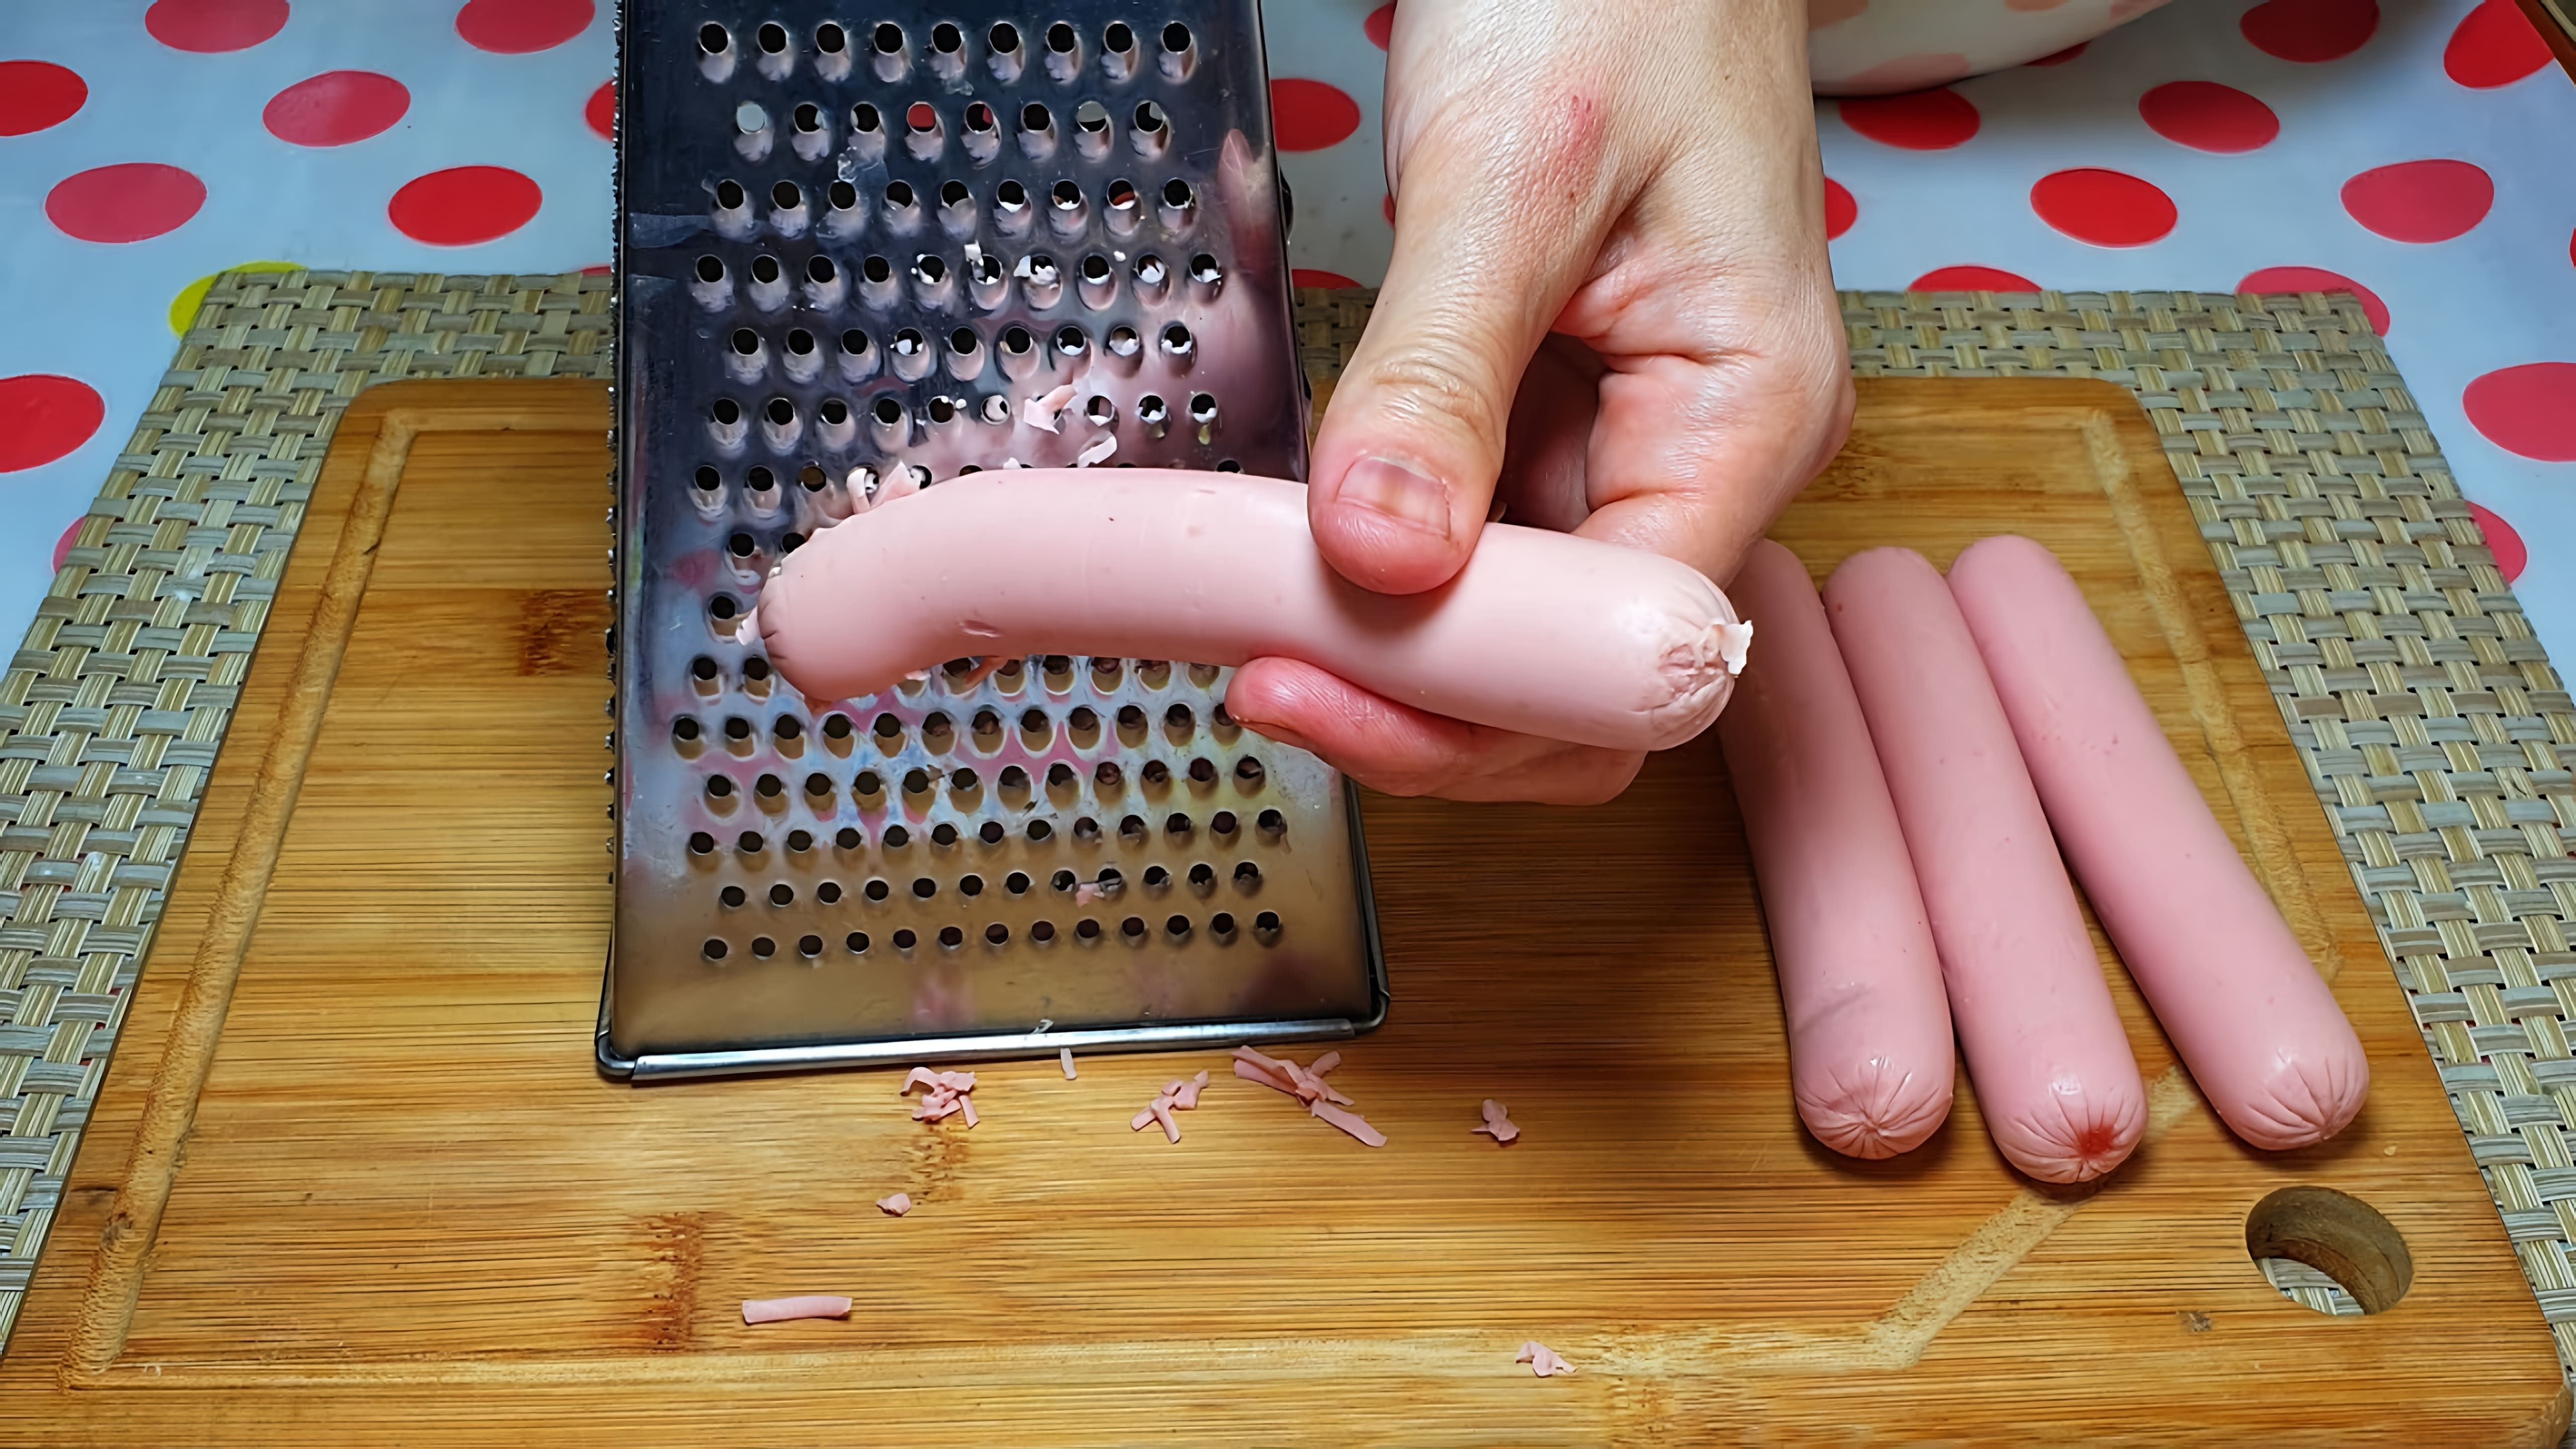 В этом видео-ролике рассказывается о необычном способе приготовления блюда, который может показаться странным, но на самом деле является очень простым и эффективным